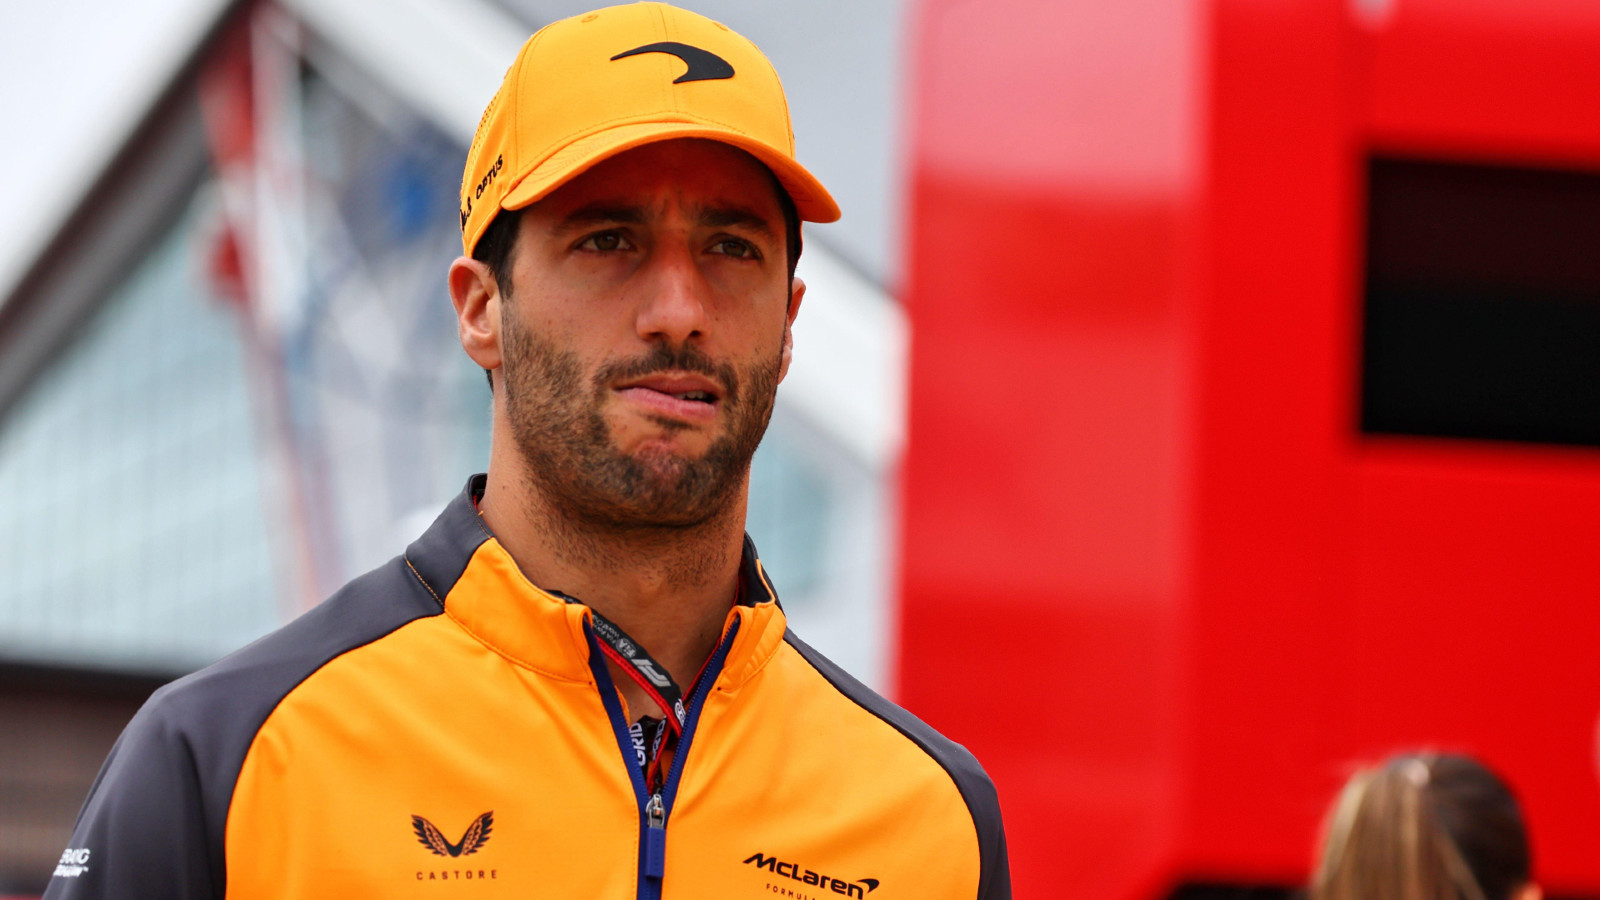 McLaren's Daniel Ricciardo at the British Grand Prix. Silverstone, July 2022.